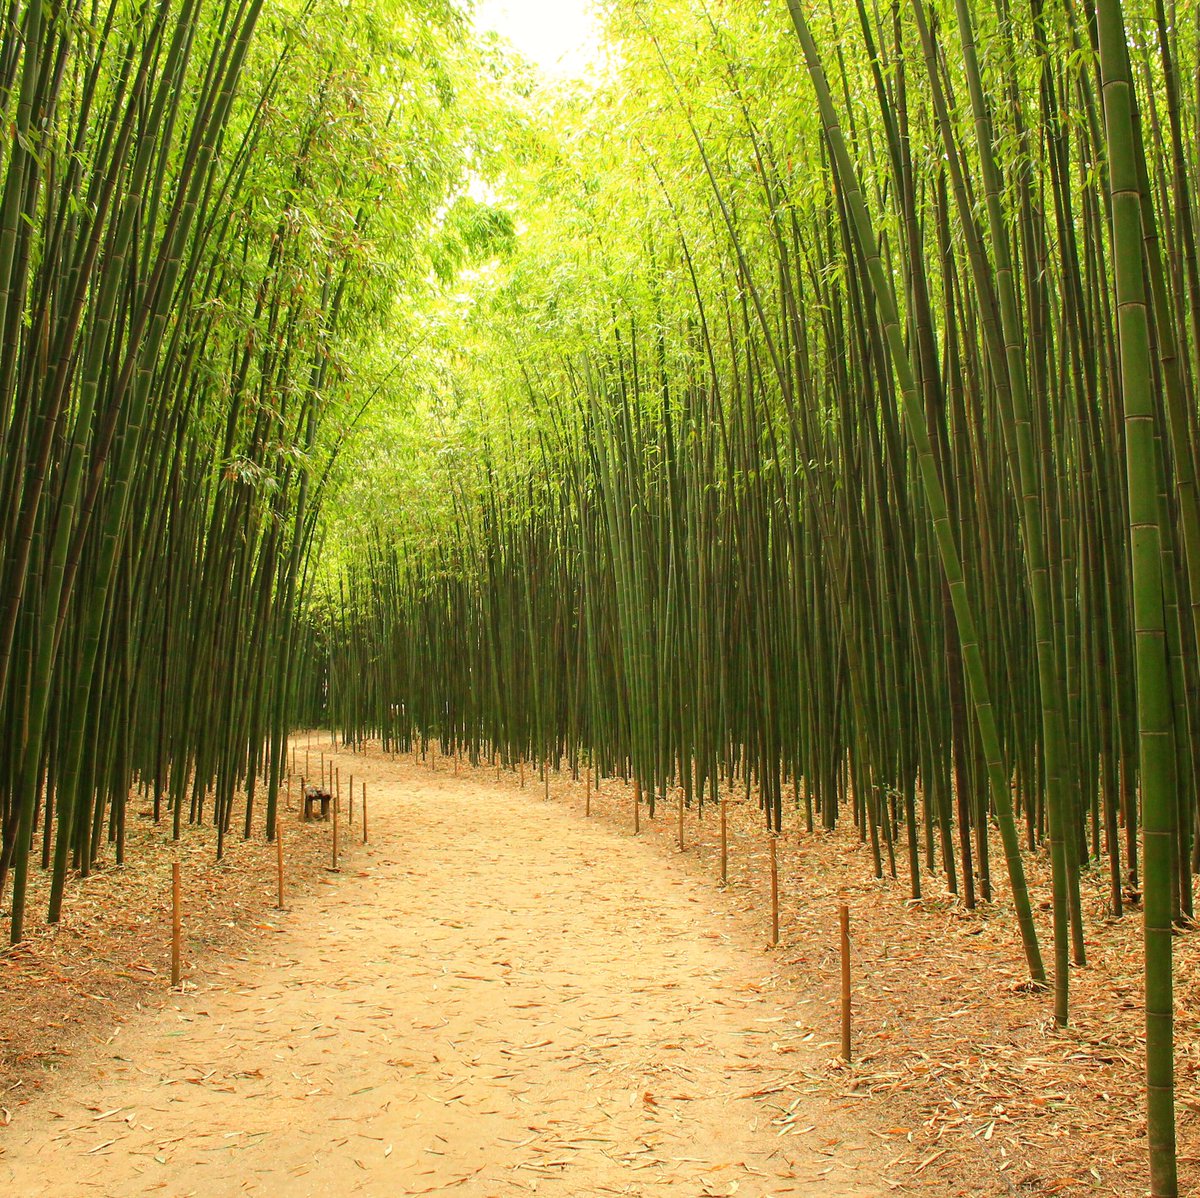 Dépaysement asiatique à la bambouseraie en Cévennes #anduze #bamboo #bambou #cevennes #gardtourisme #jardinexotique #asiatique #japonais #botanique #jardinjaponais #france #europe #anduzetourisme #relaxation #zen #wood #bambooforest #warm #serenity #occitanie #foret